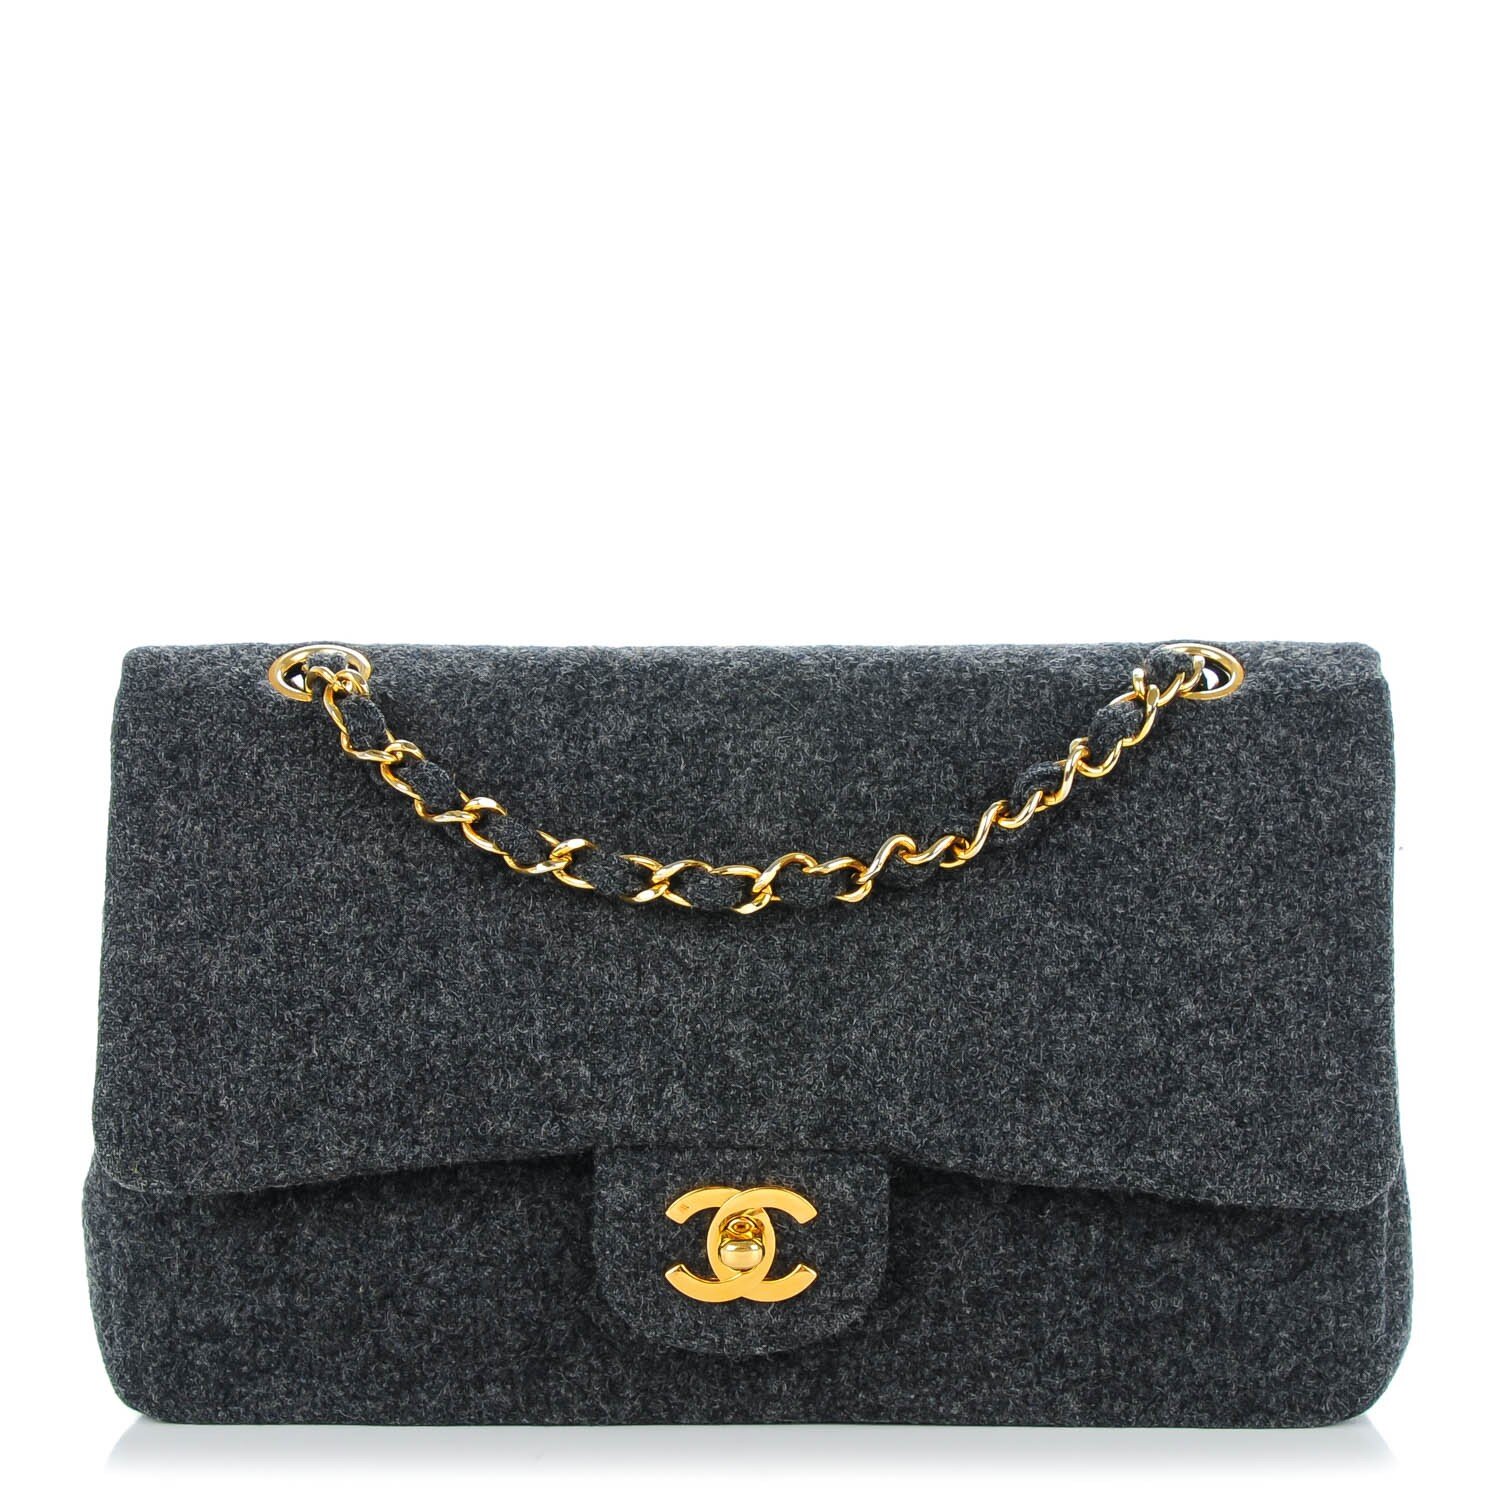 Chanel Classic Flap Bag in Grey Wool.jpg